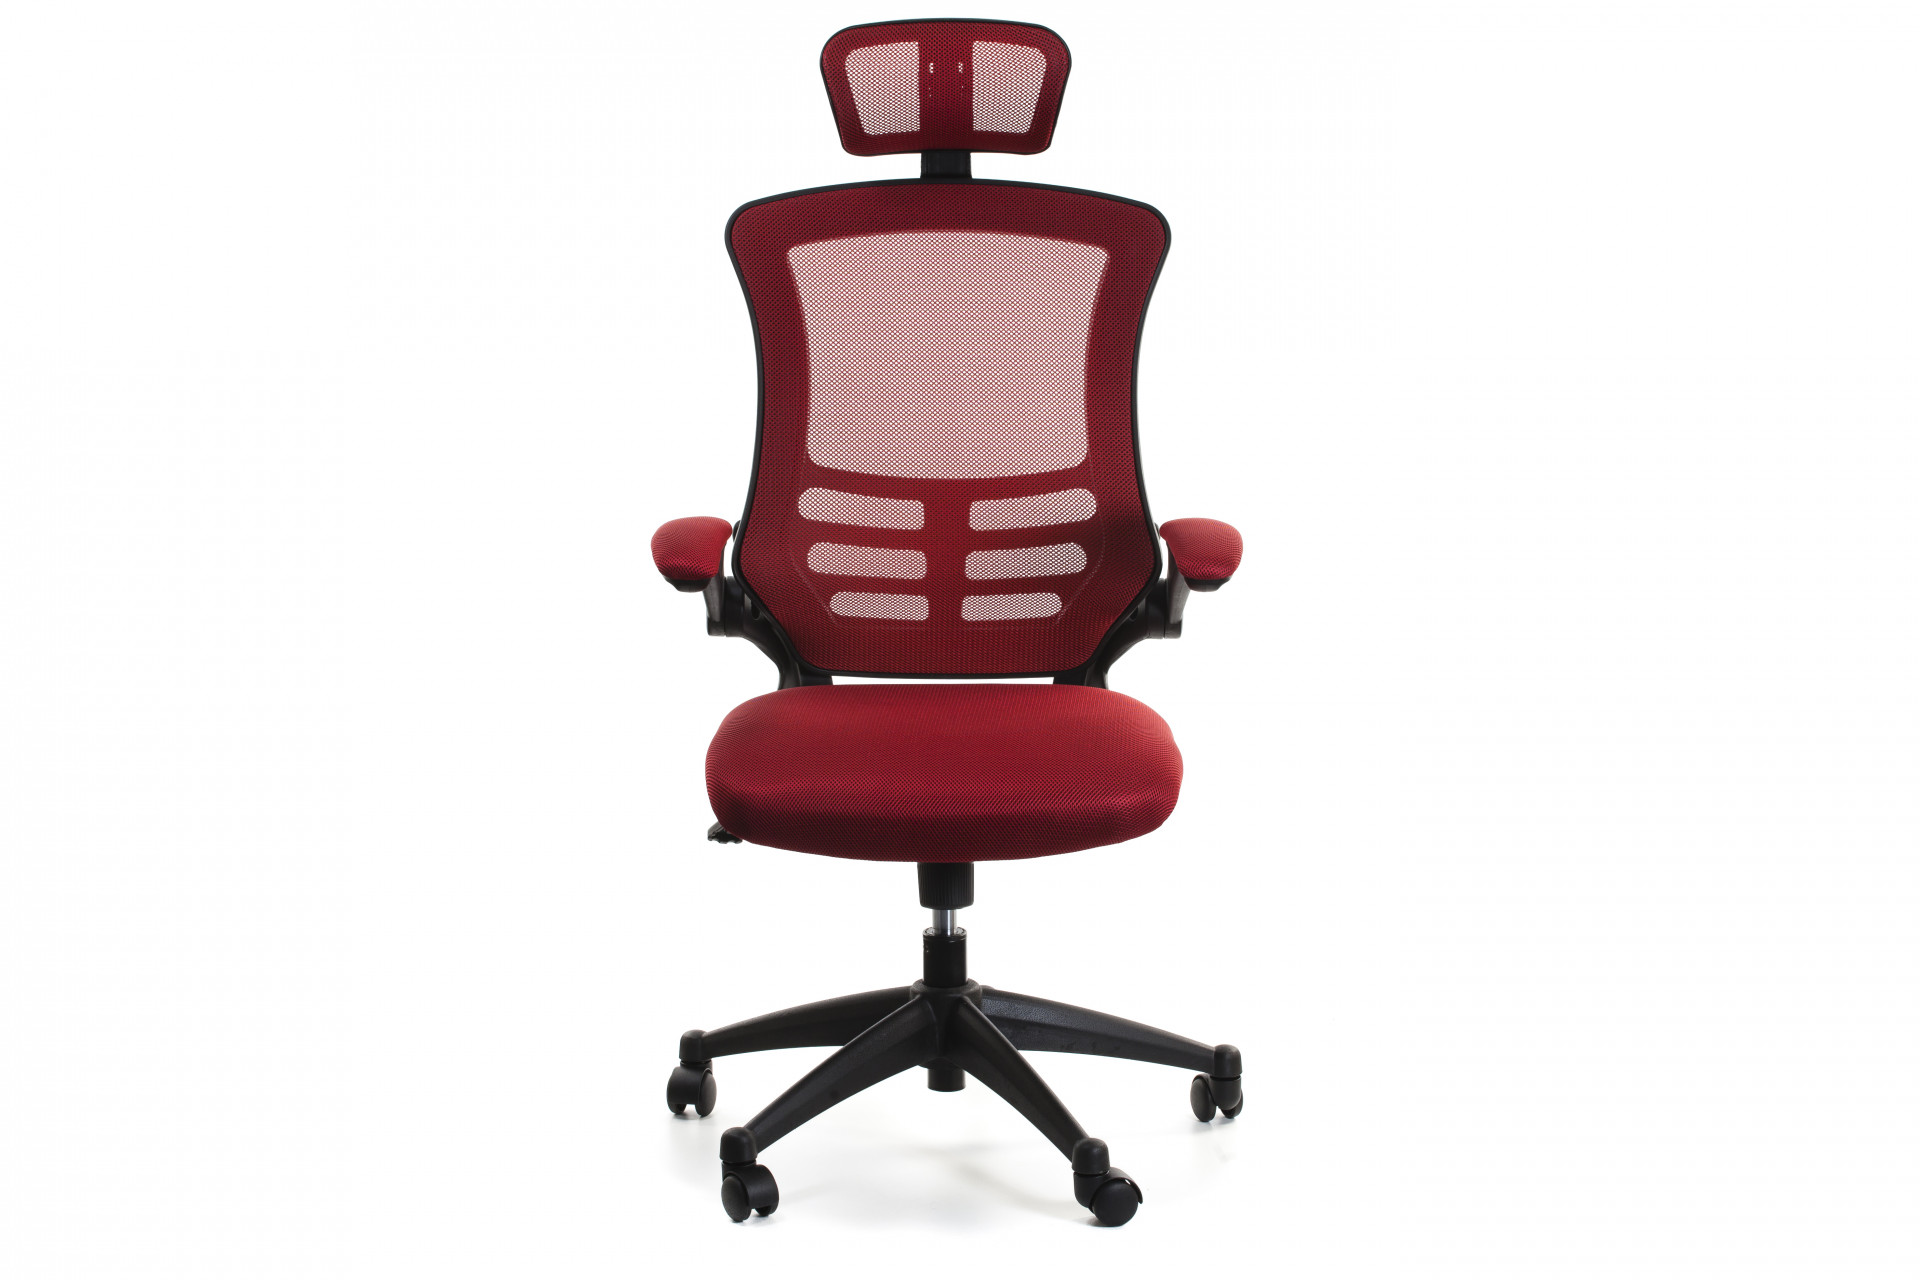 Кресло офисное TPRO- RAGUSA, red 27717